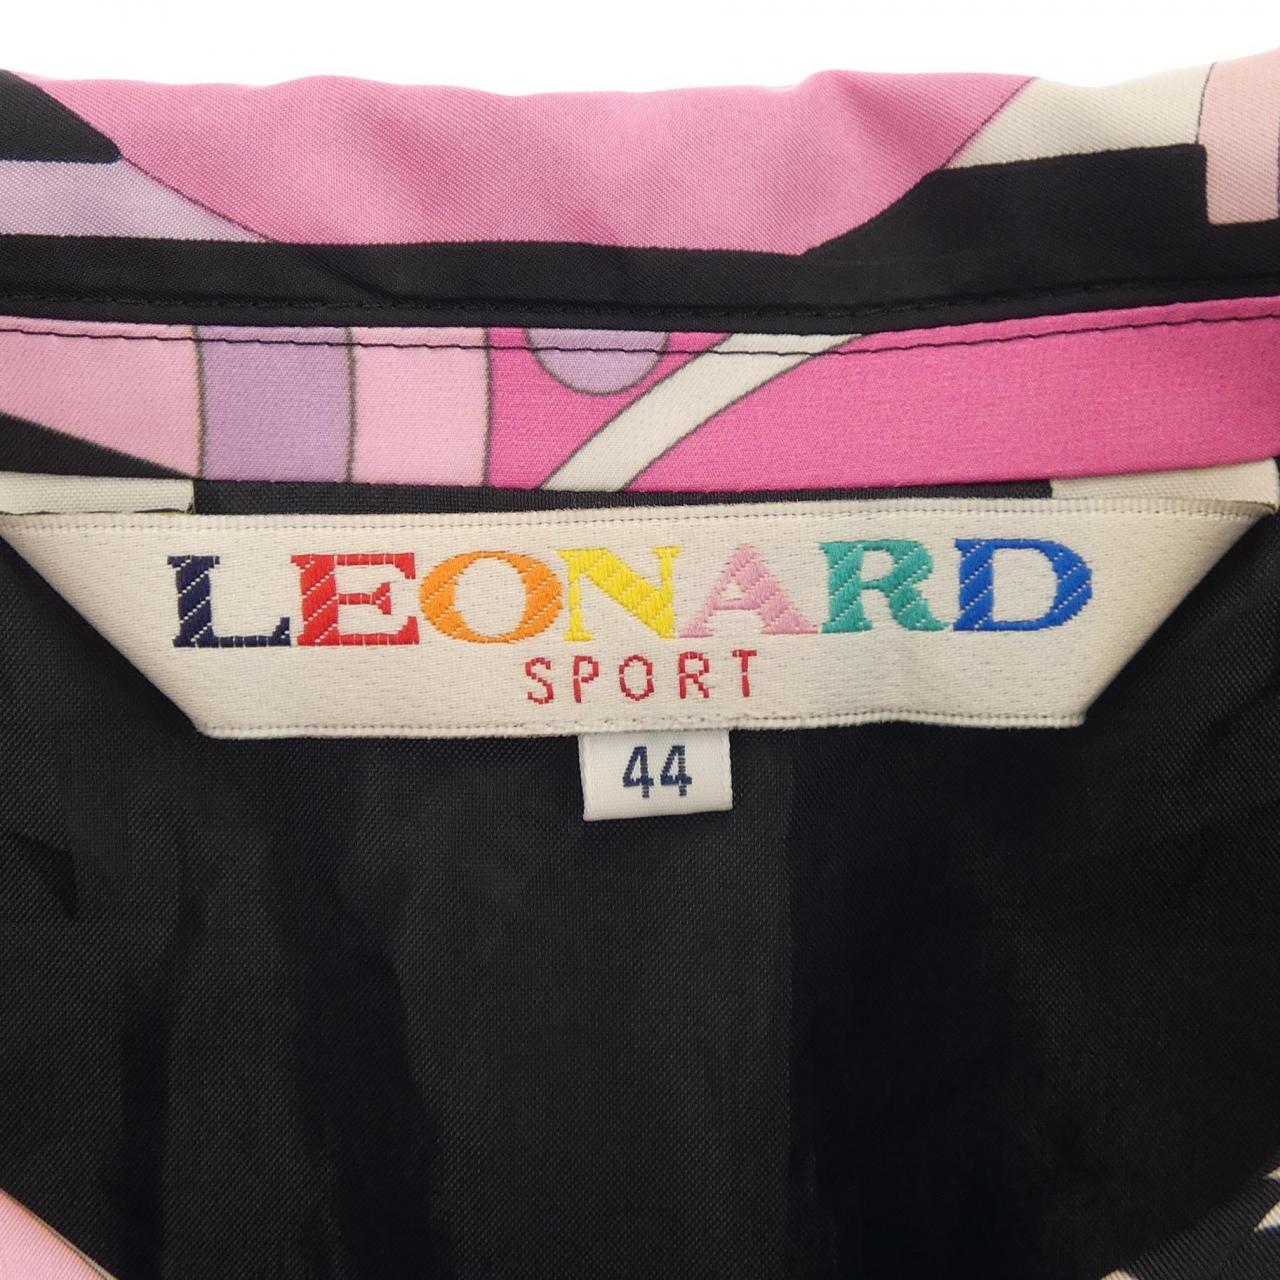 レオナールスポーツ LEONARD SPORT コート